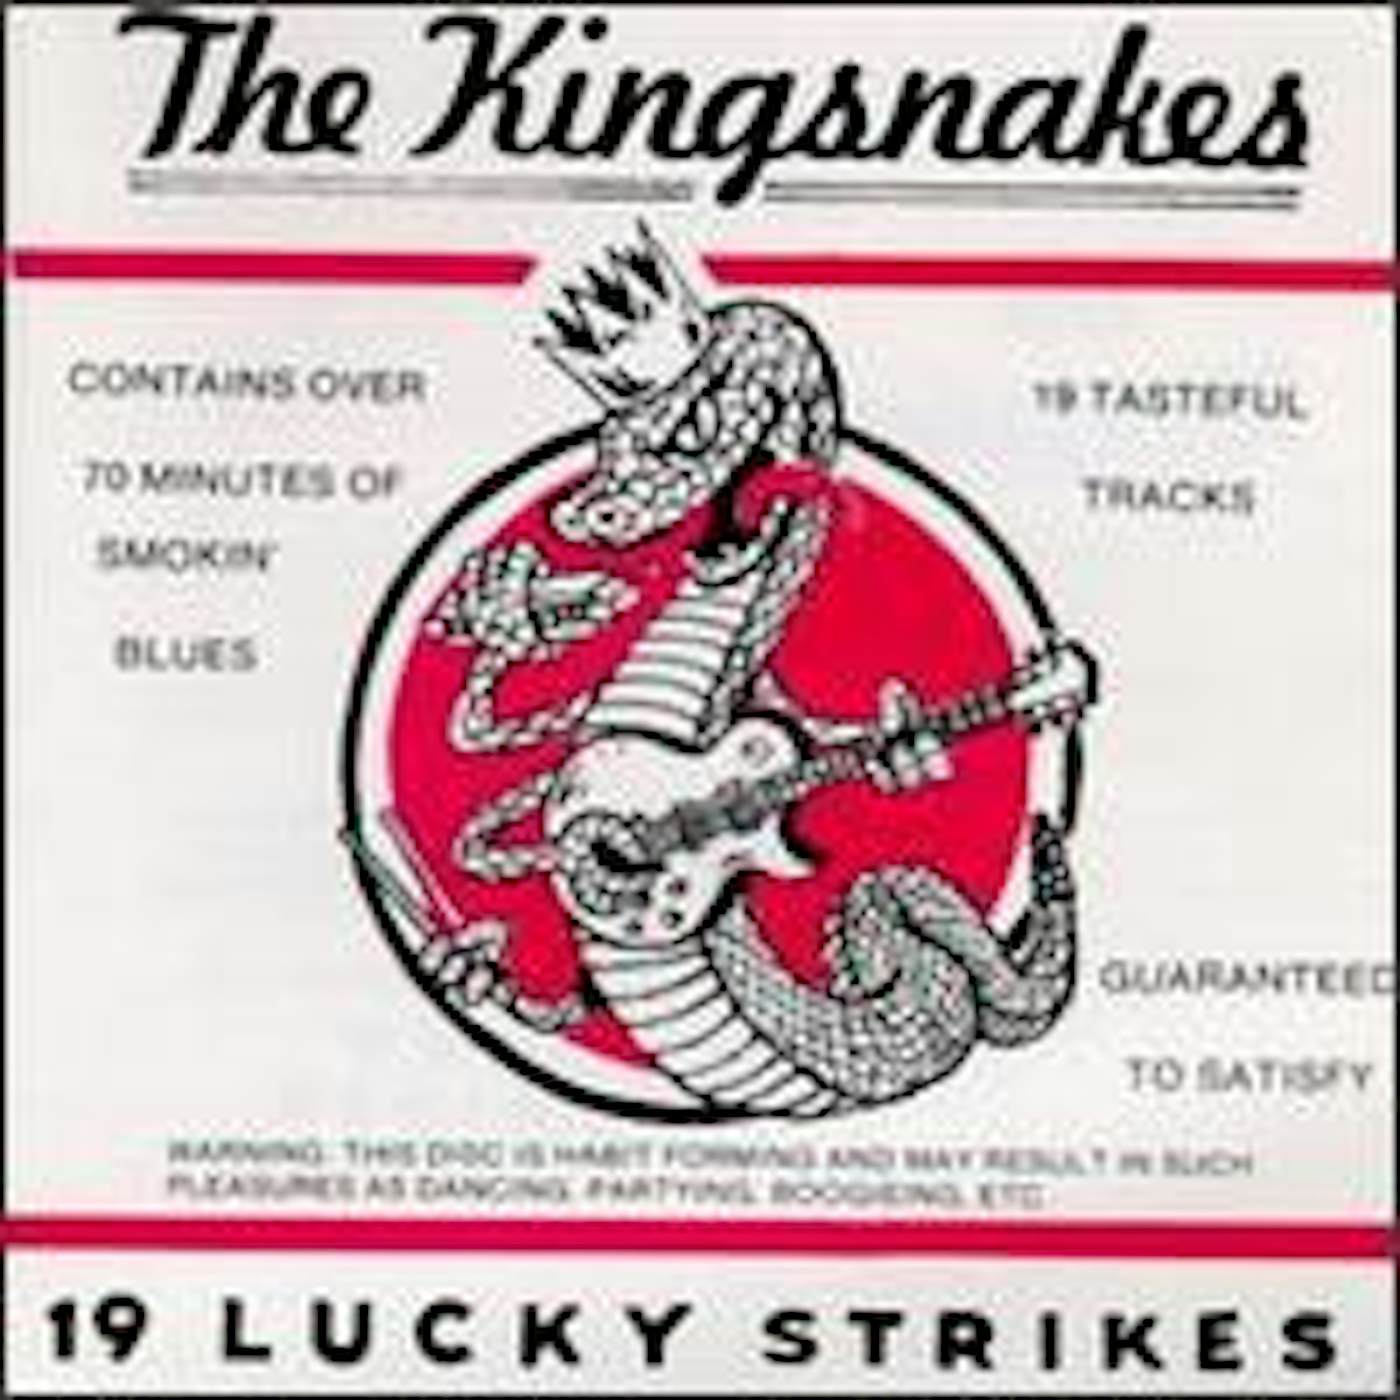 Kingsnakes 19 LUCKY STRIKES CD